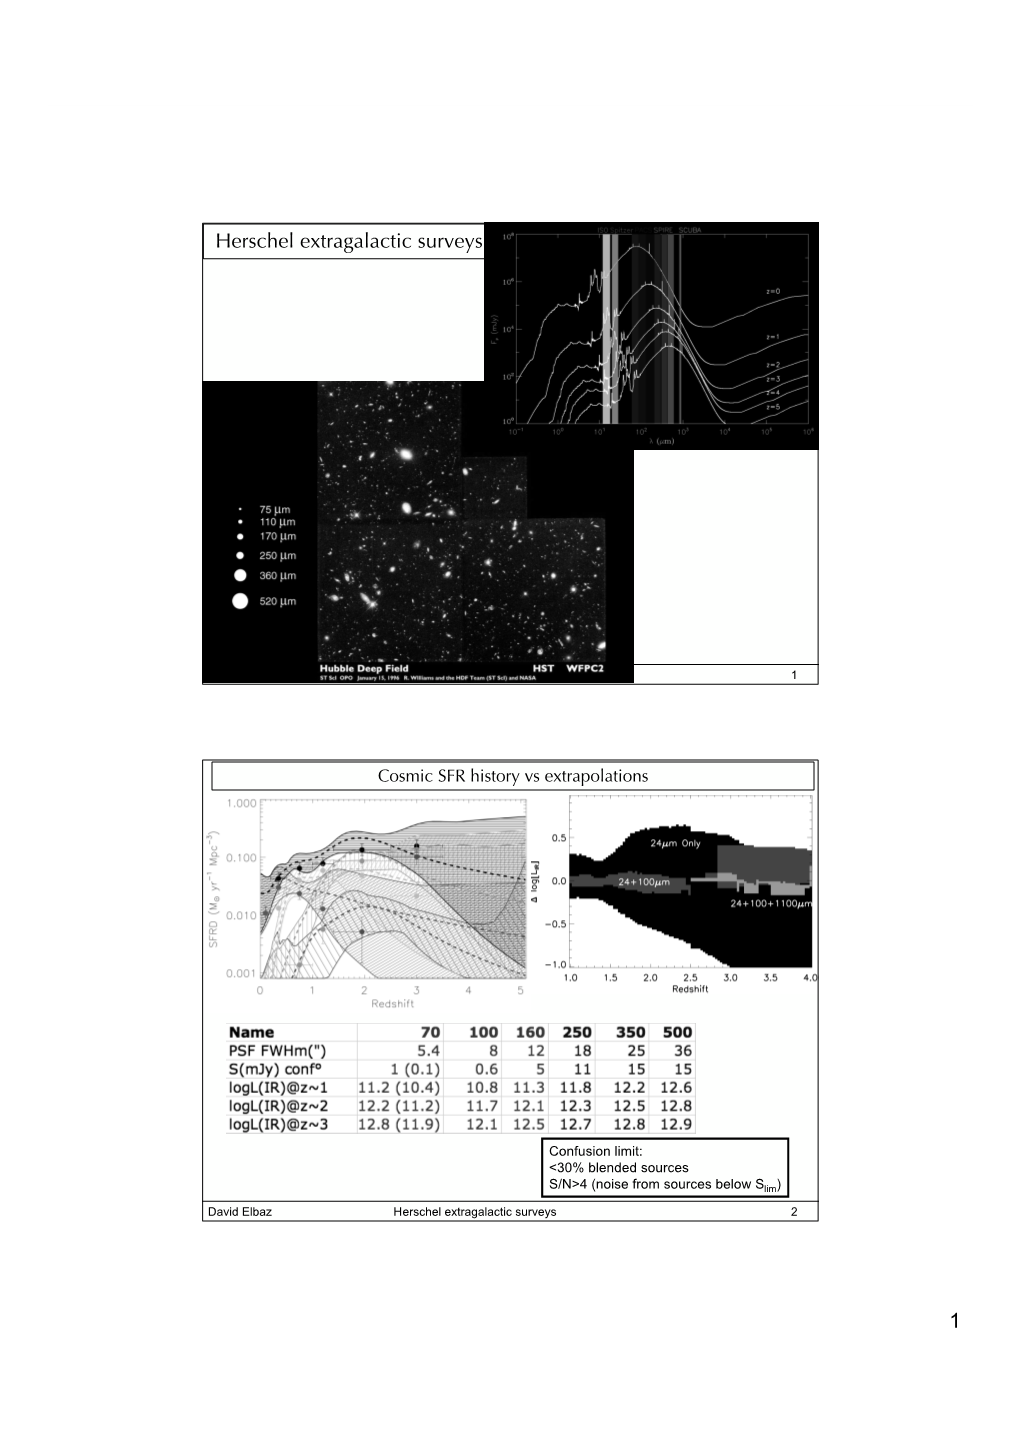 1 Herschel Extragalactic Surveys